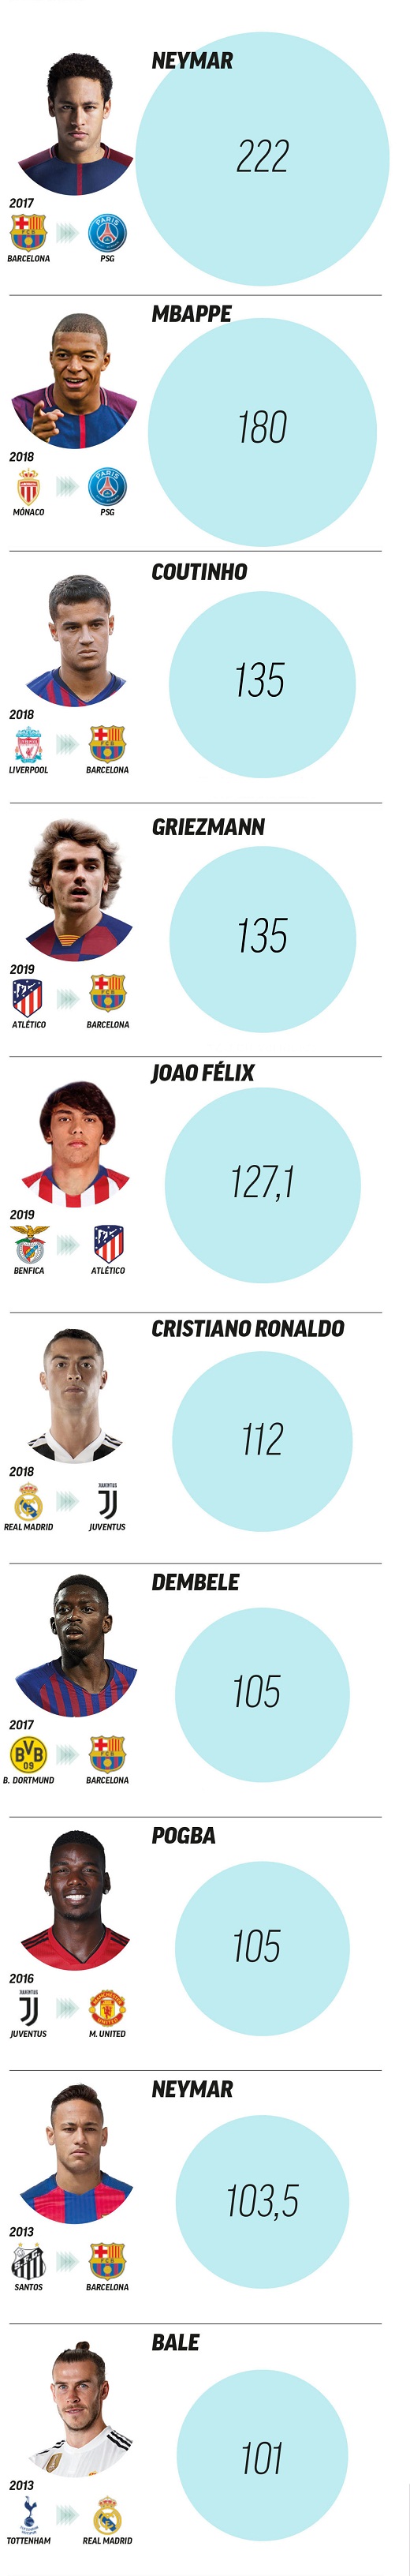 Ngôi sao Barca lọt Top 3 cầu thủ đắt giá nhất thế giới